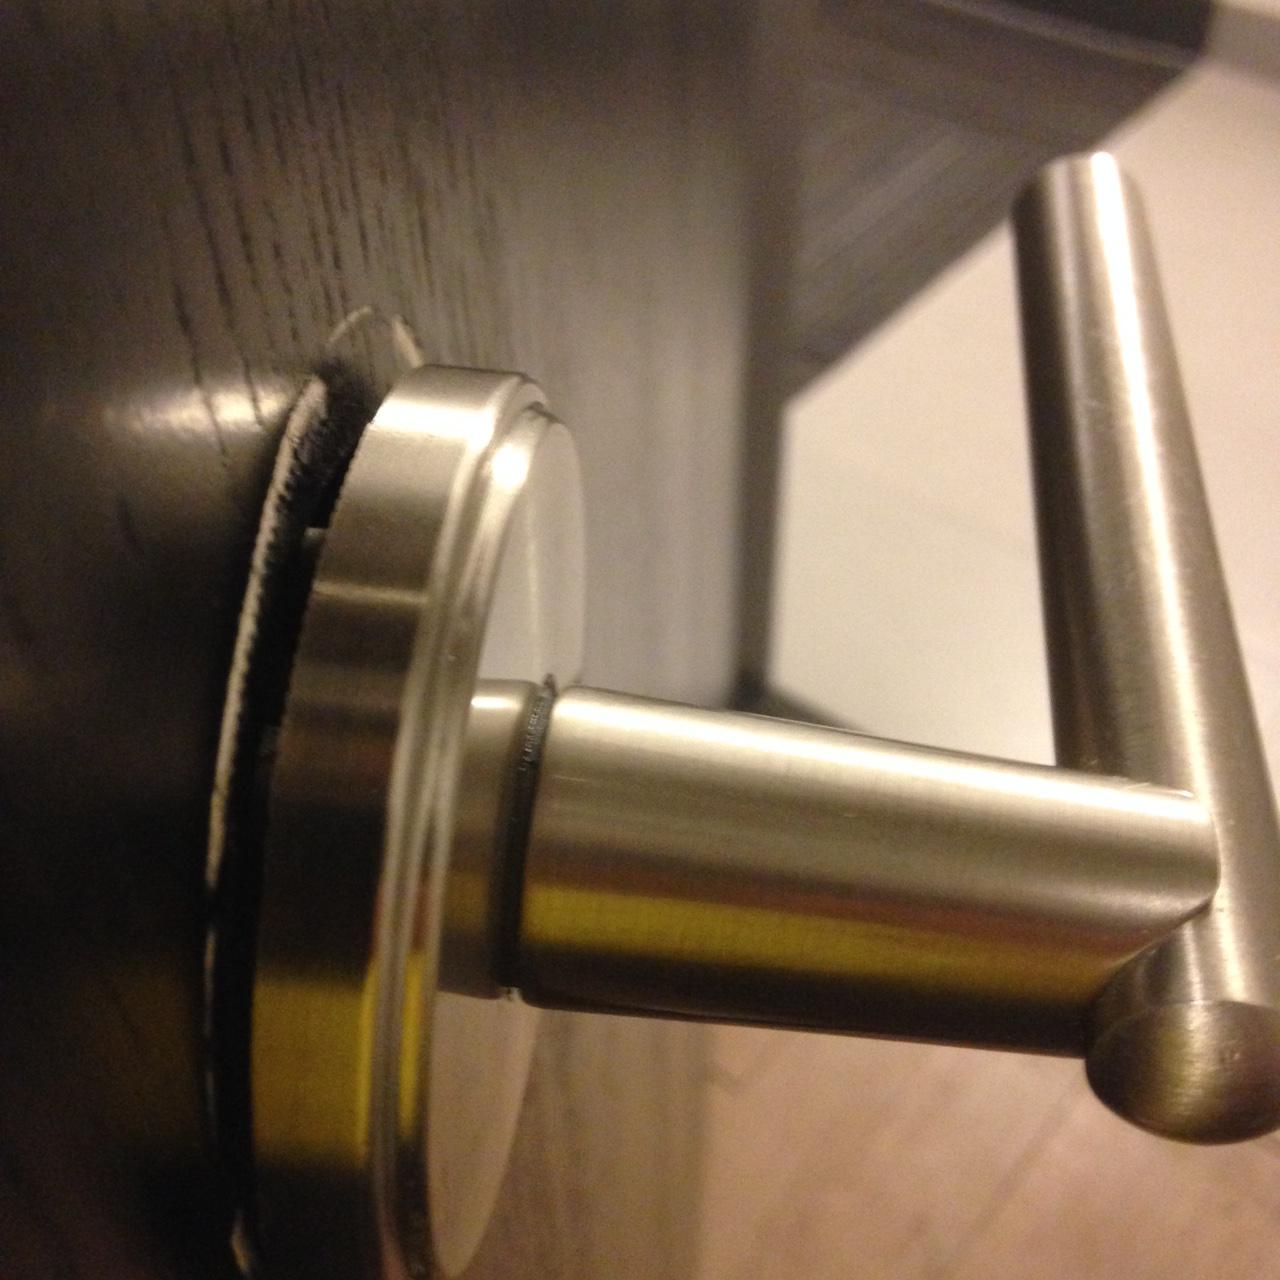 fixing loose door knob photo - 13